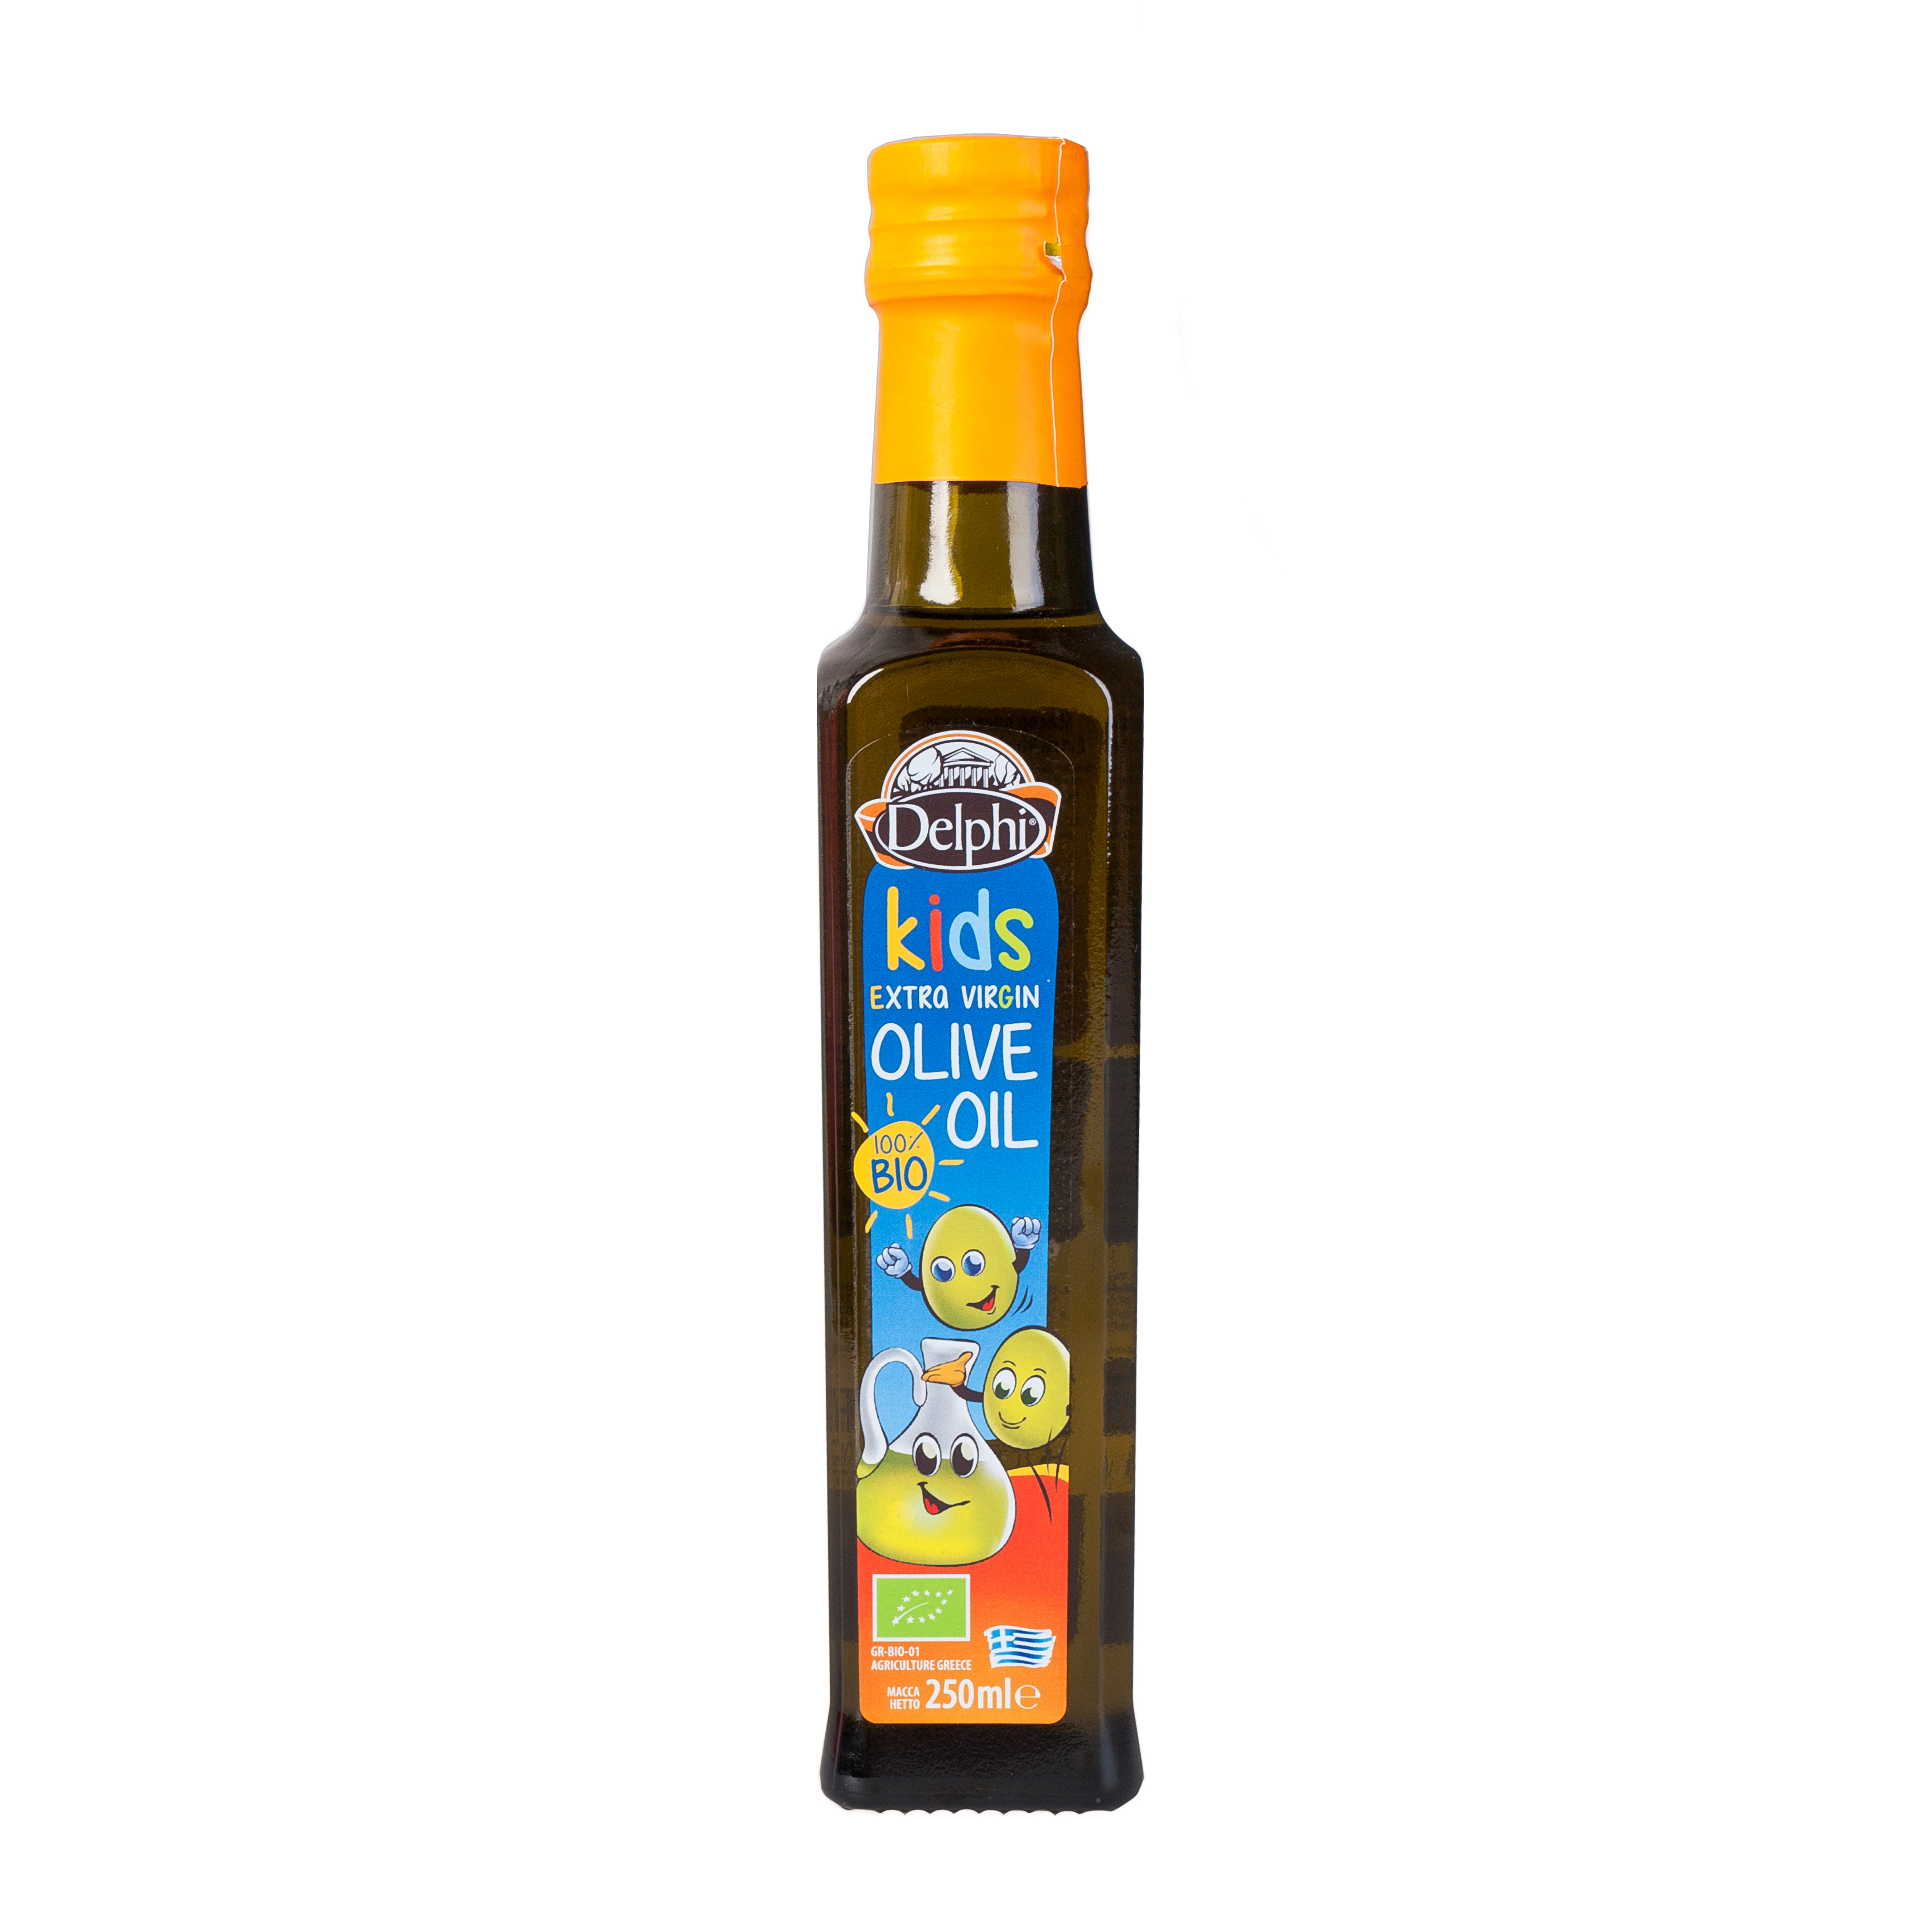 Детям можно оливковое масло. Масло оливковое e.v. био Kids DELPHI 0,25 Л. Масло оливковое Extra Virgin Olive Oil DELPHI 0,25л. Масло оливковое DELPHI С Крита ст/б 250мл. DELPHI масло оливковое Extra Virgin нерафинированное.